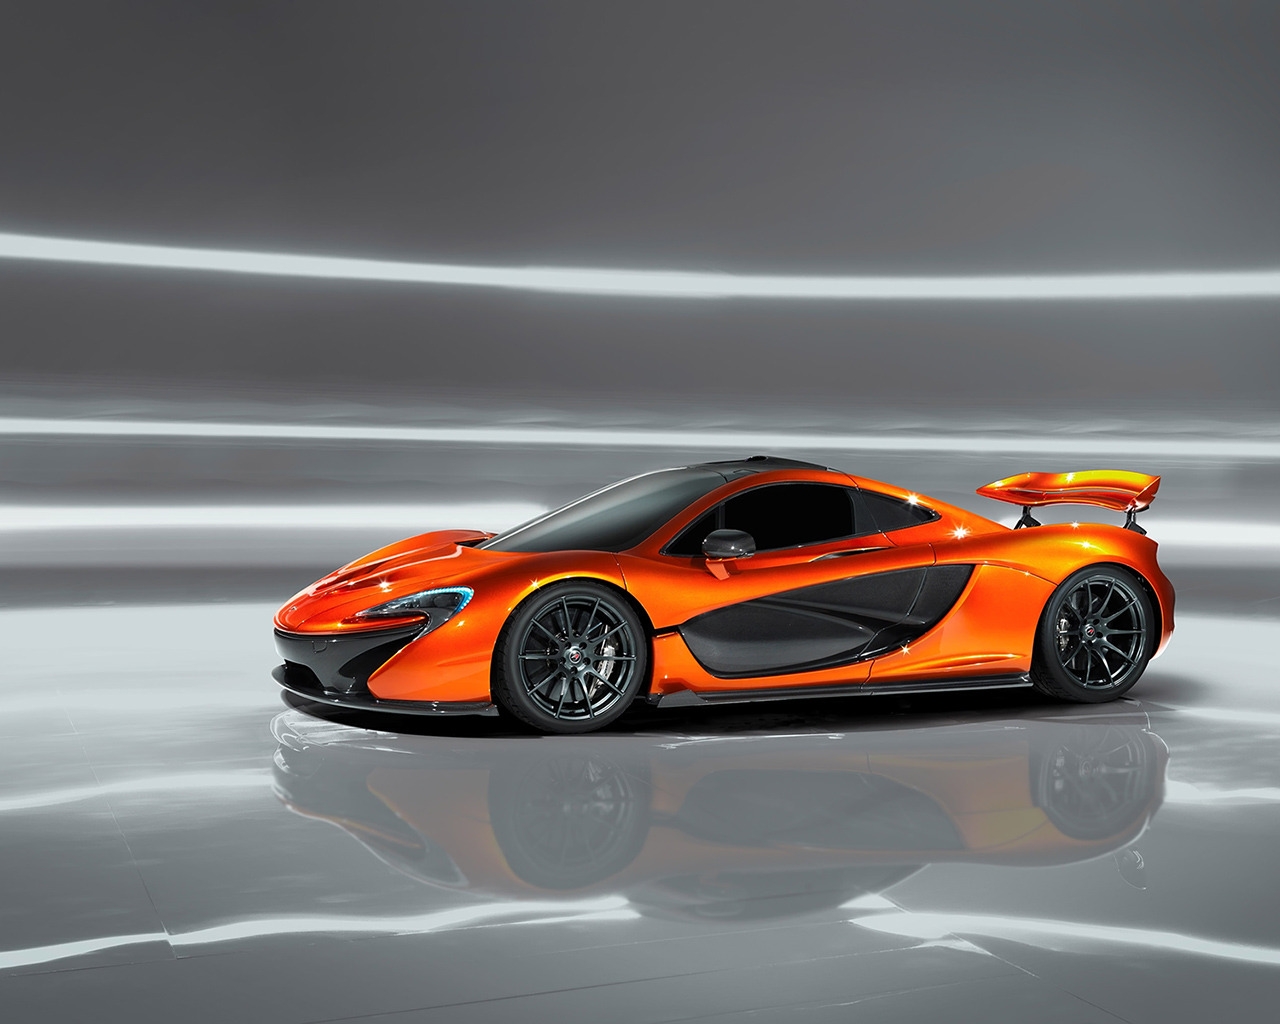 Orange McLaren P1 Concept for 1280 x 1024 resolution